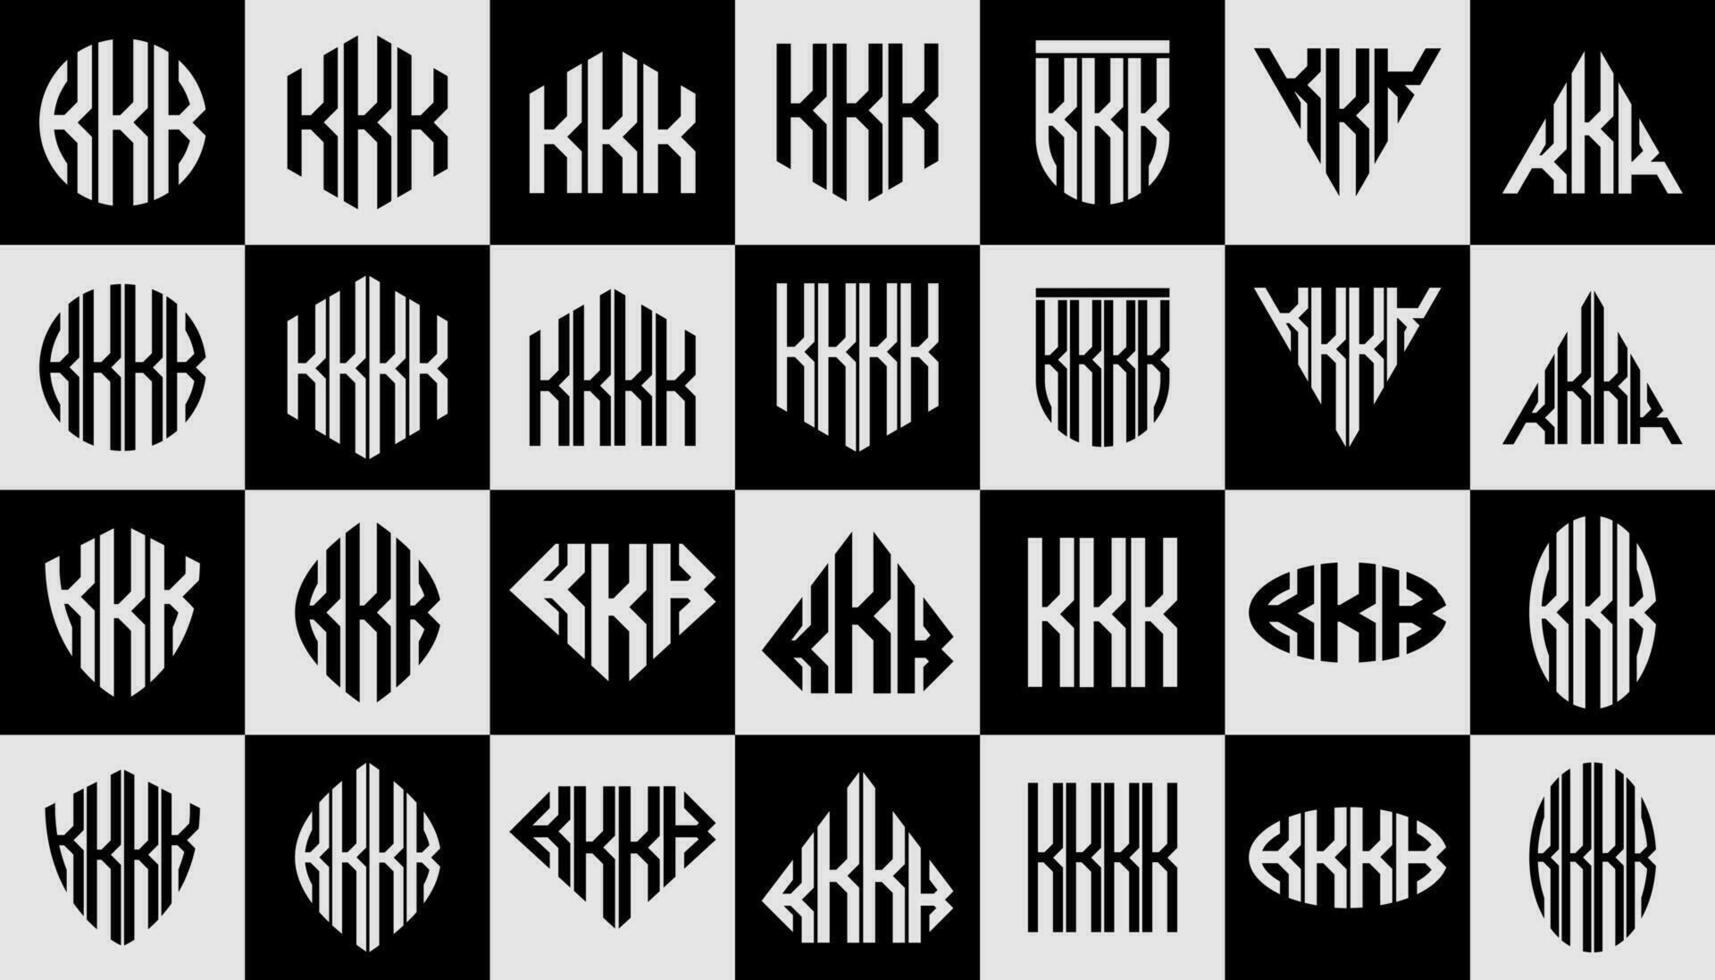 einstellen von geometrisch Linie gestalten Brief k kkk kkkk Logo Design vektor